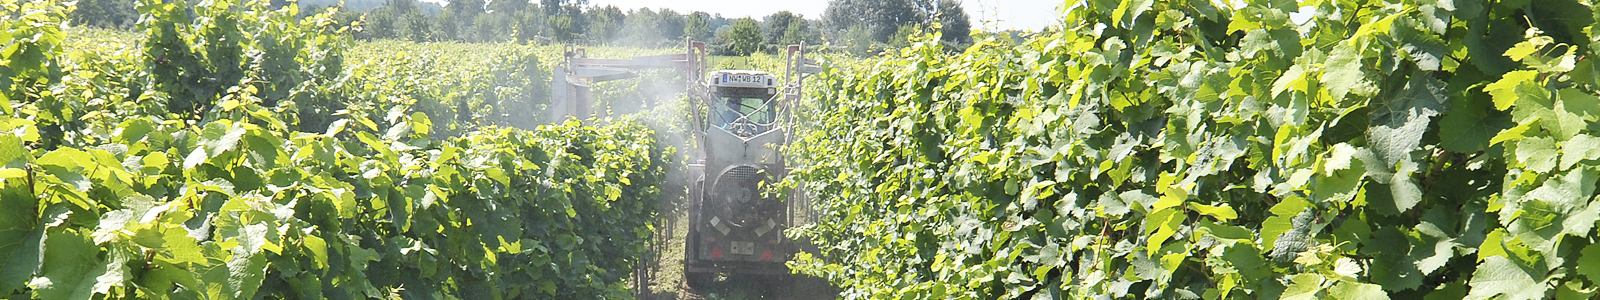 Traktor spritzt mit Weinbergsspritze in Rebzeilen ©DLR